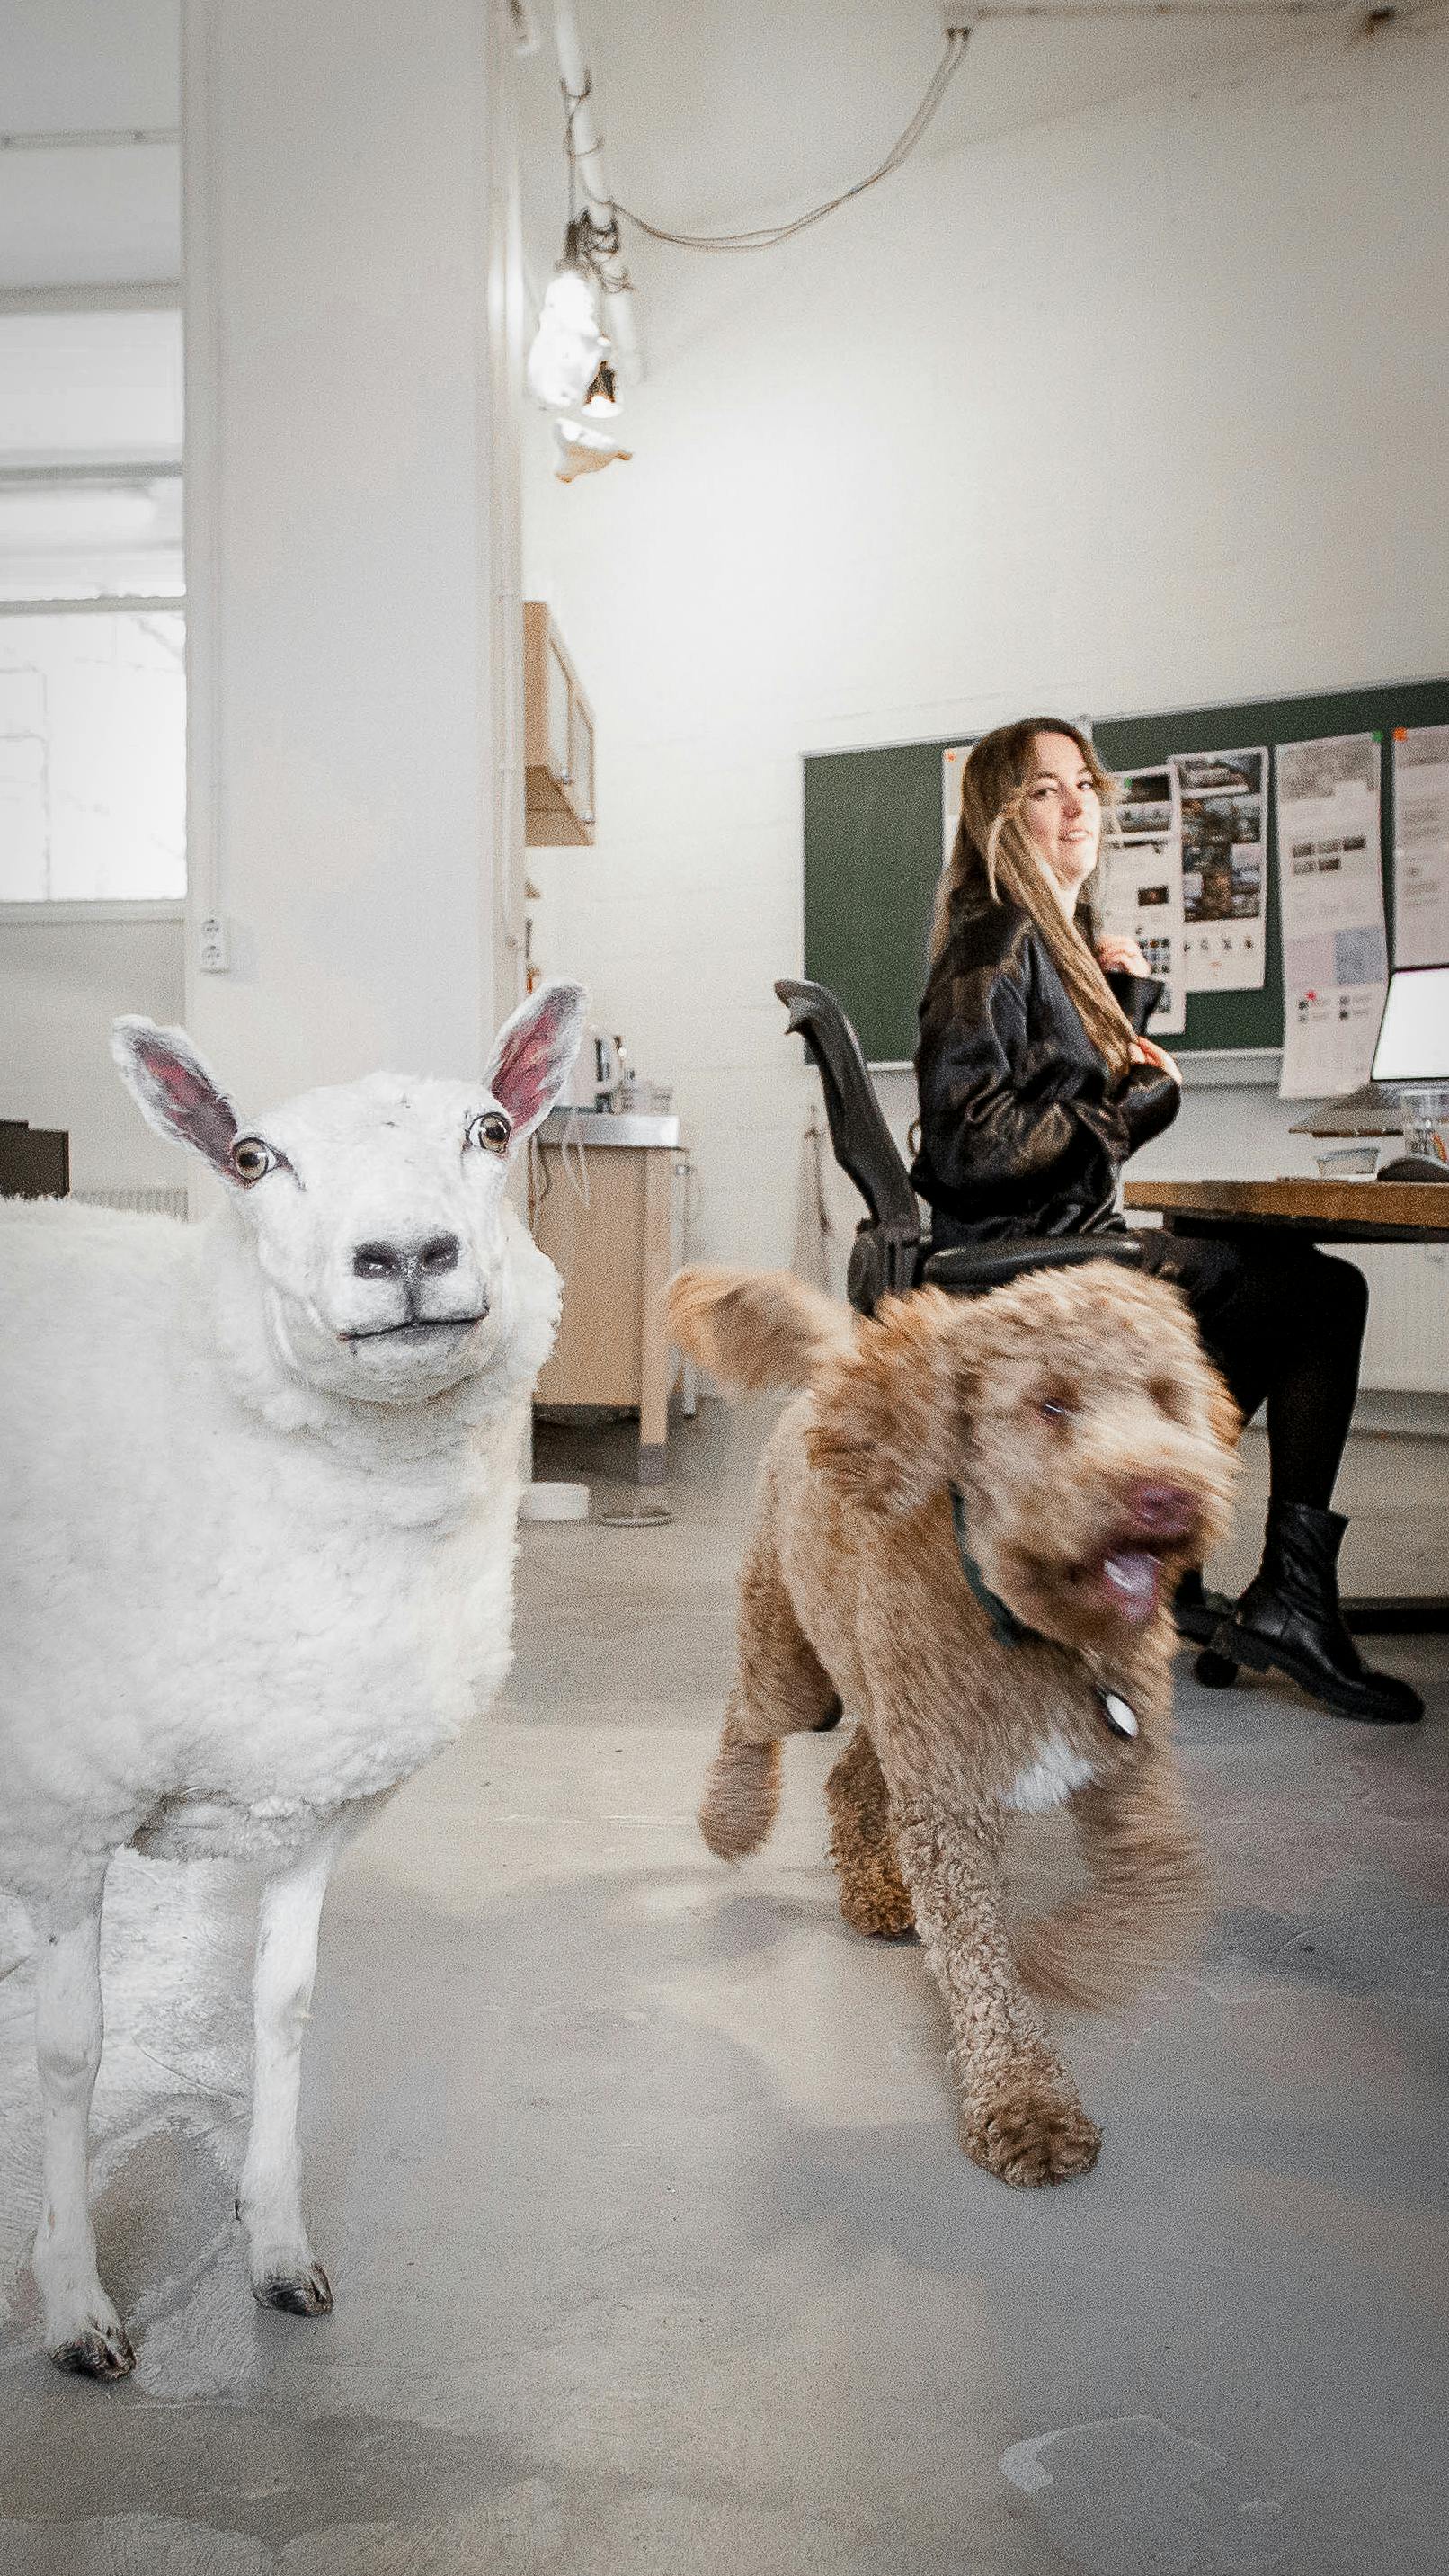 Foto van de studio waarbij een opgezet schaap midden in de ruimte staat en een hond het beeld uit loopt. een ontwikkelaar kijkt lachend op.